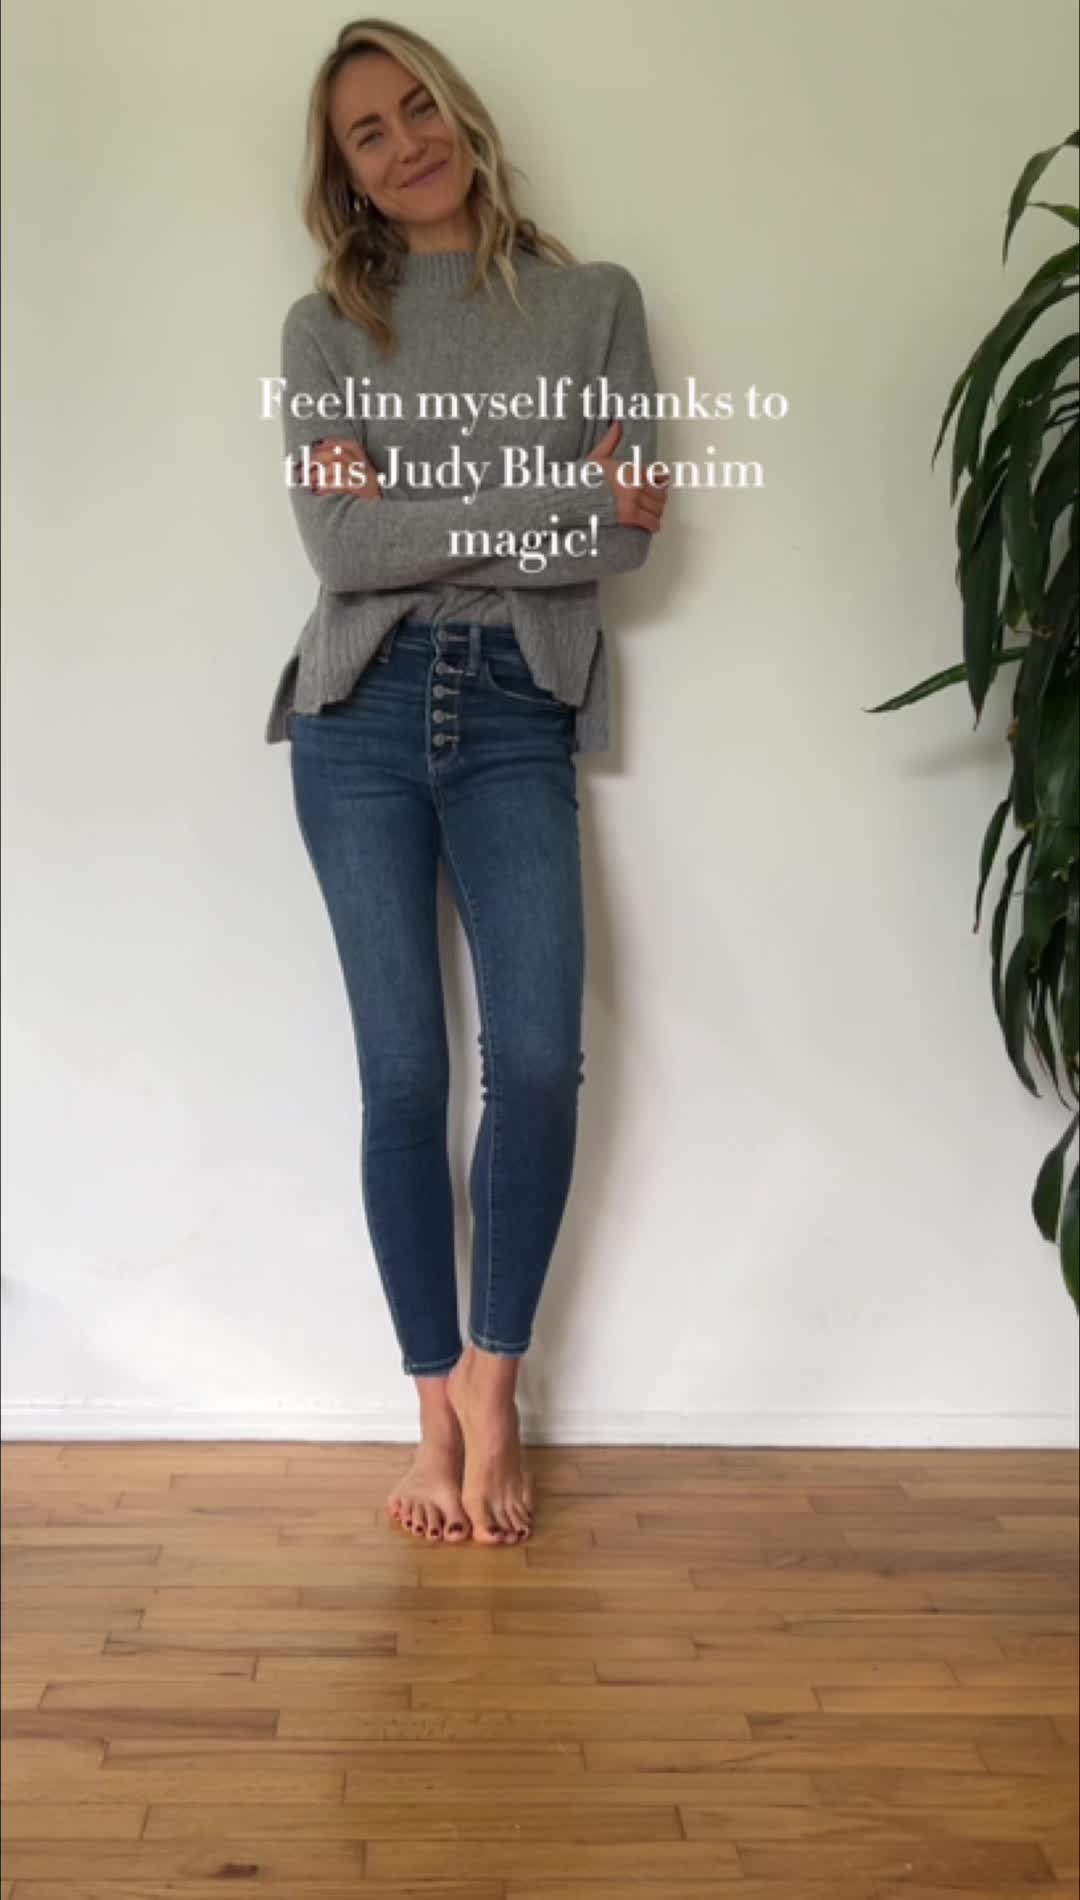 Judy Blue Jeans Official Site  Size Inclusive Women's Jeans & Denim